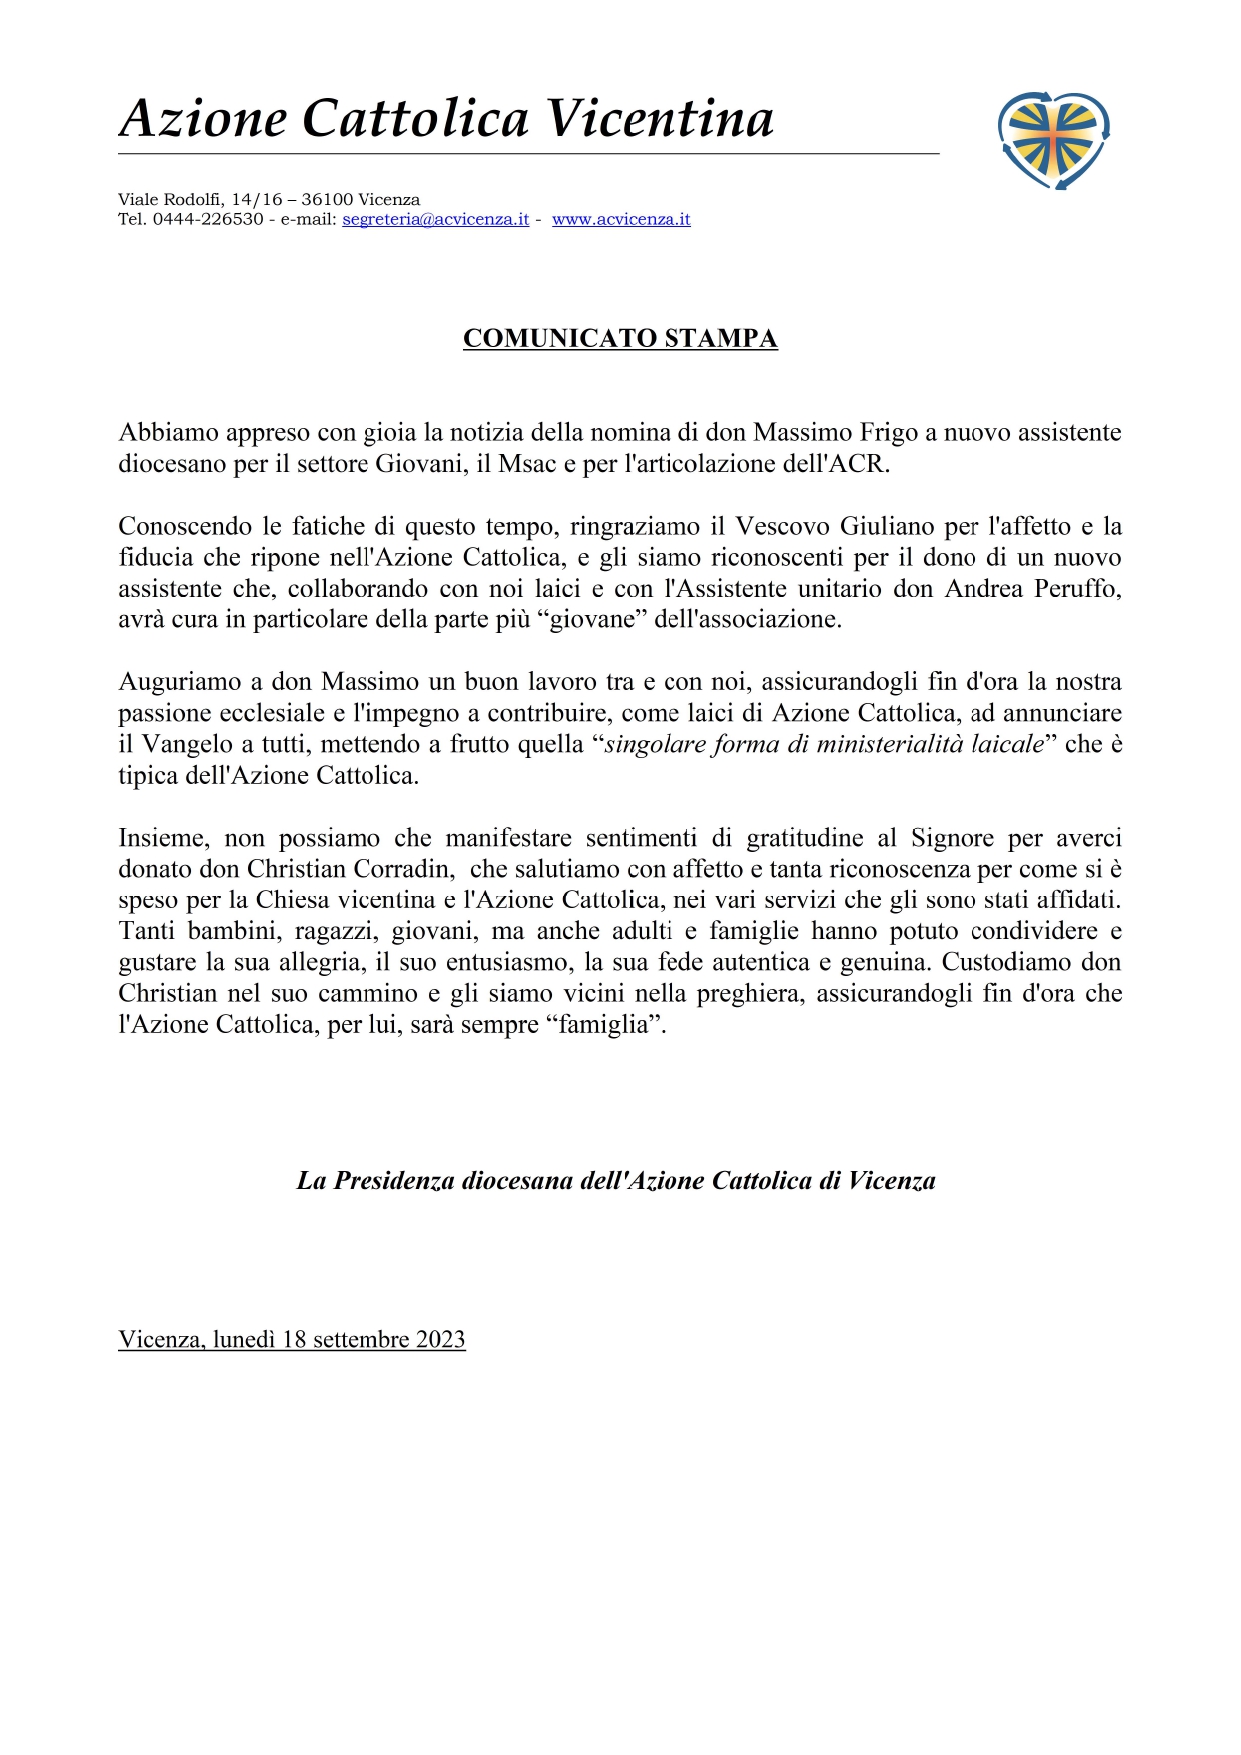 Comunicato stampa comunicazione don Massimo e don Christian_page-0001 (1)